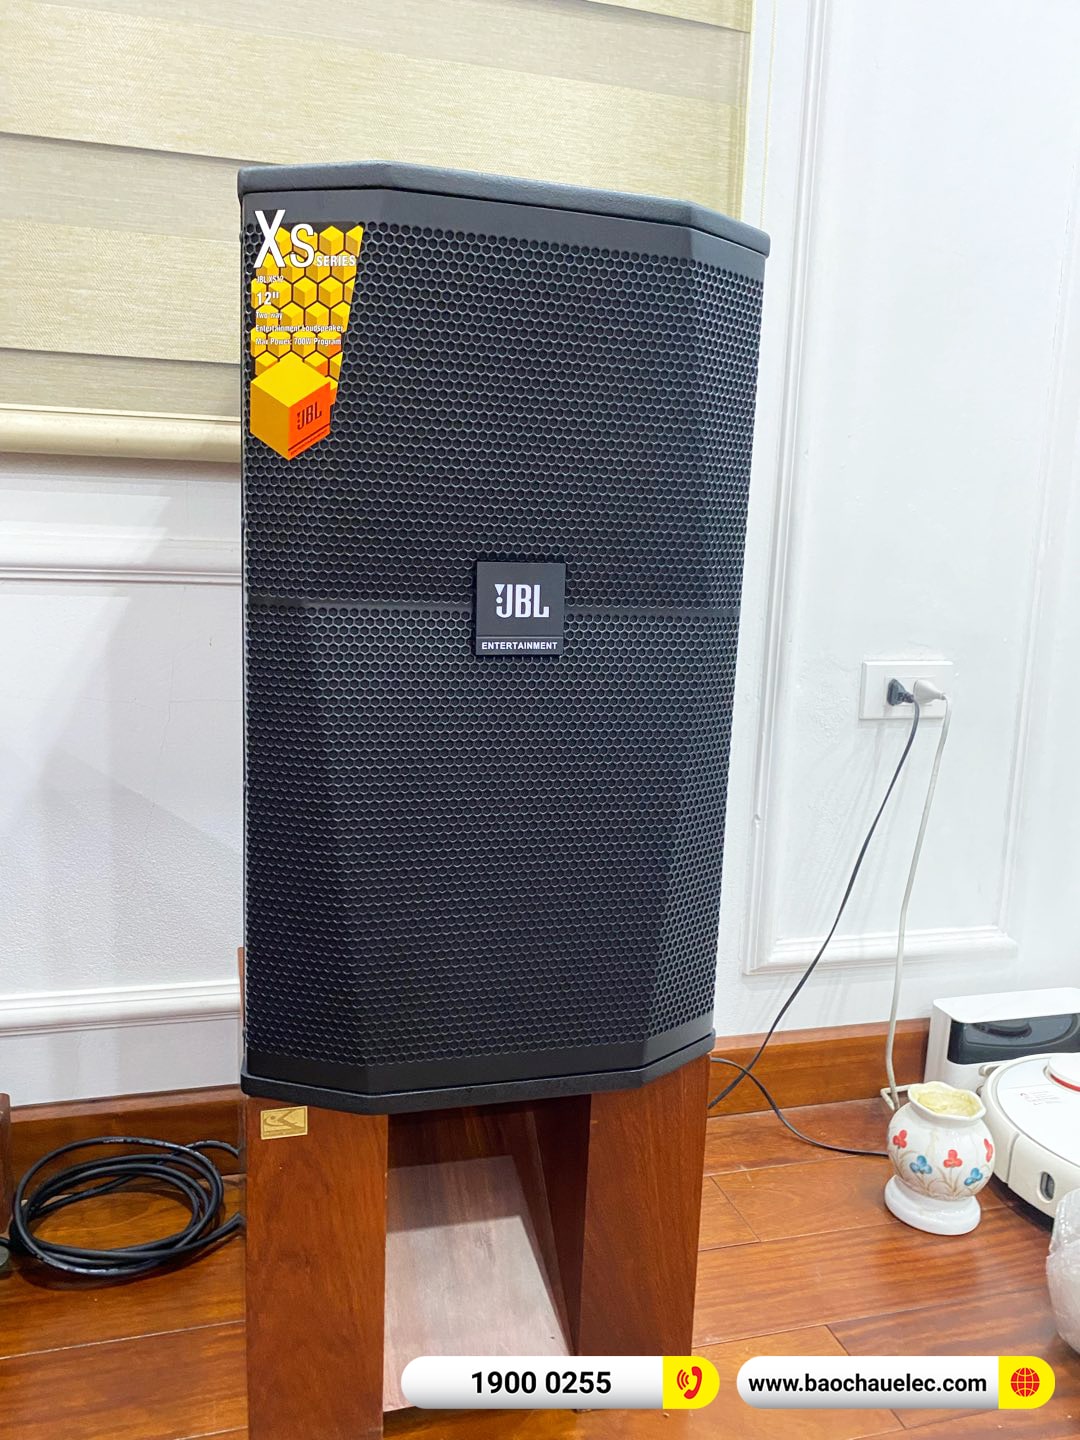 Lắp đặt dàn karaoke JBL gần 90tr cho anh Hiếu tại Hà Nội (JBL XS12, JBL V8, JBL VX8, A120P, DCD-600NE,…)